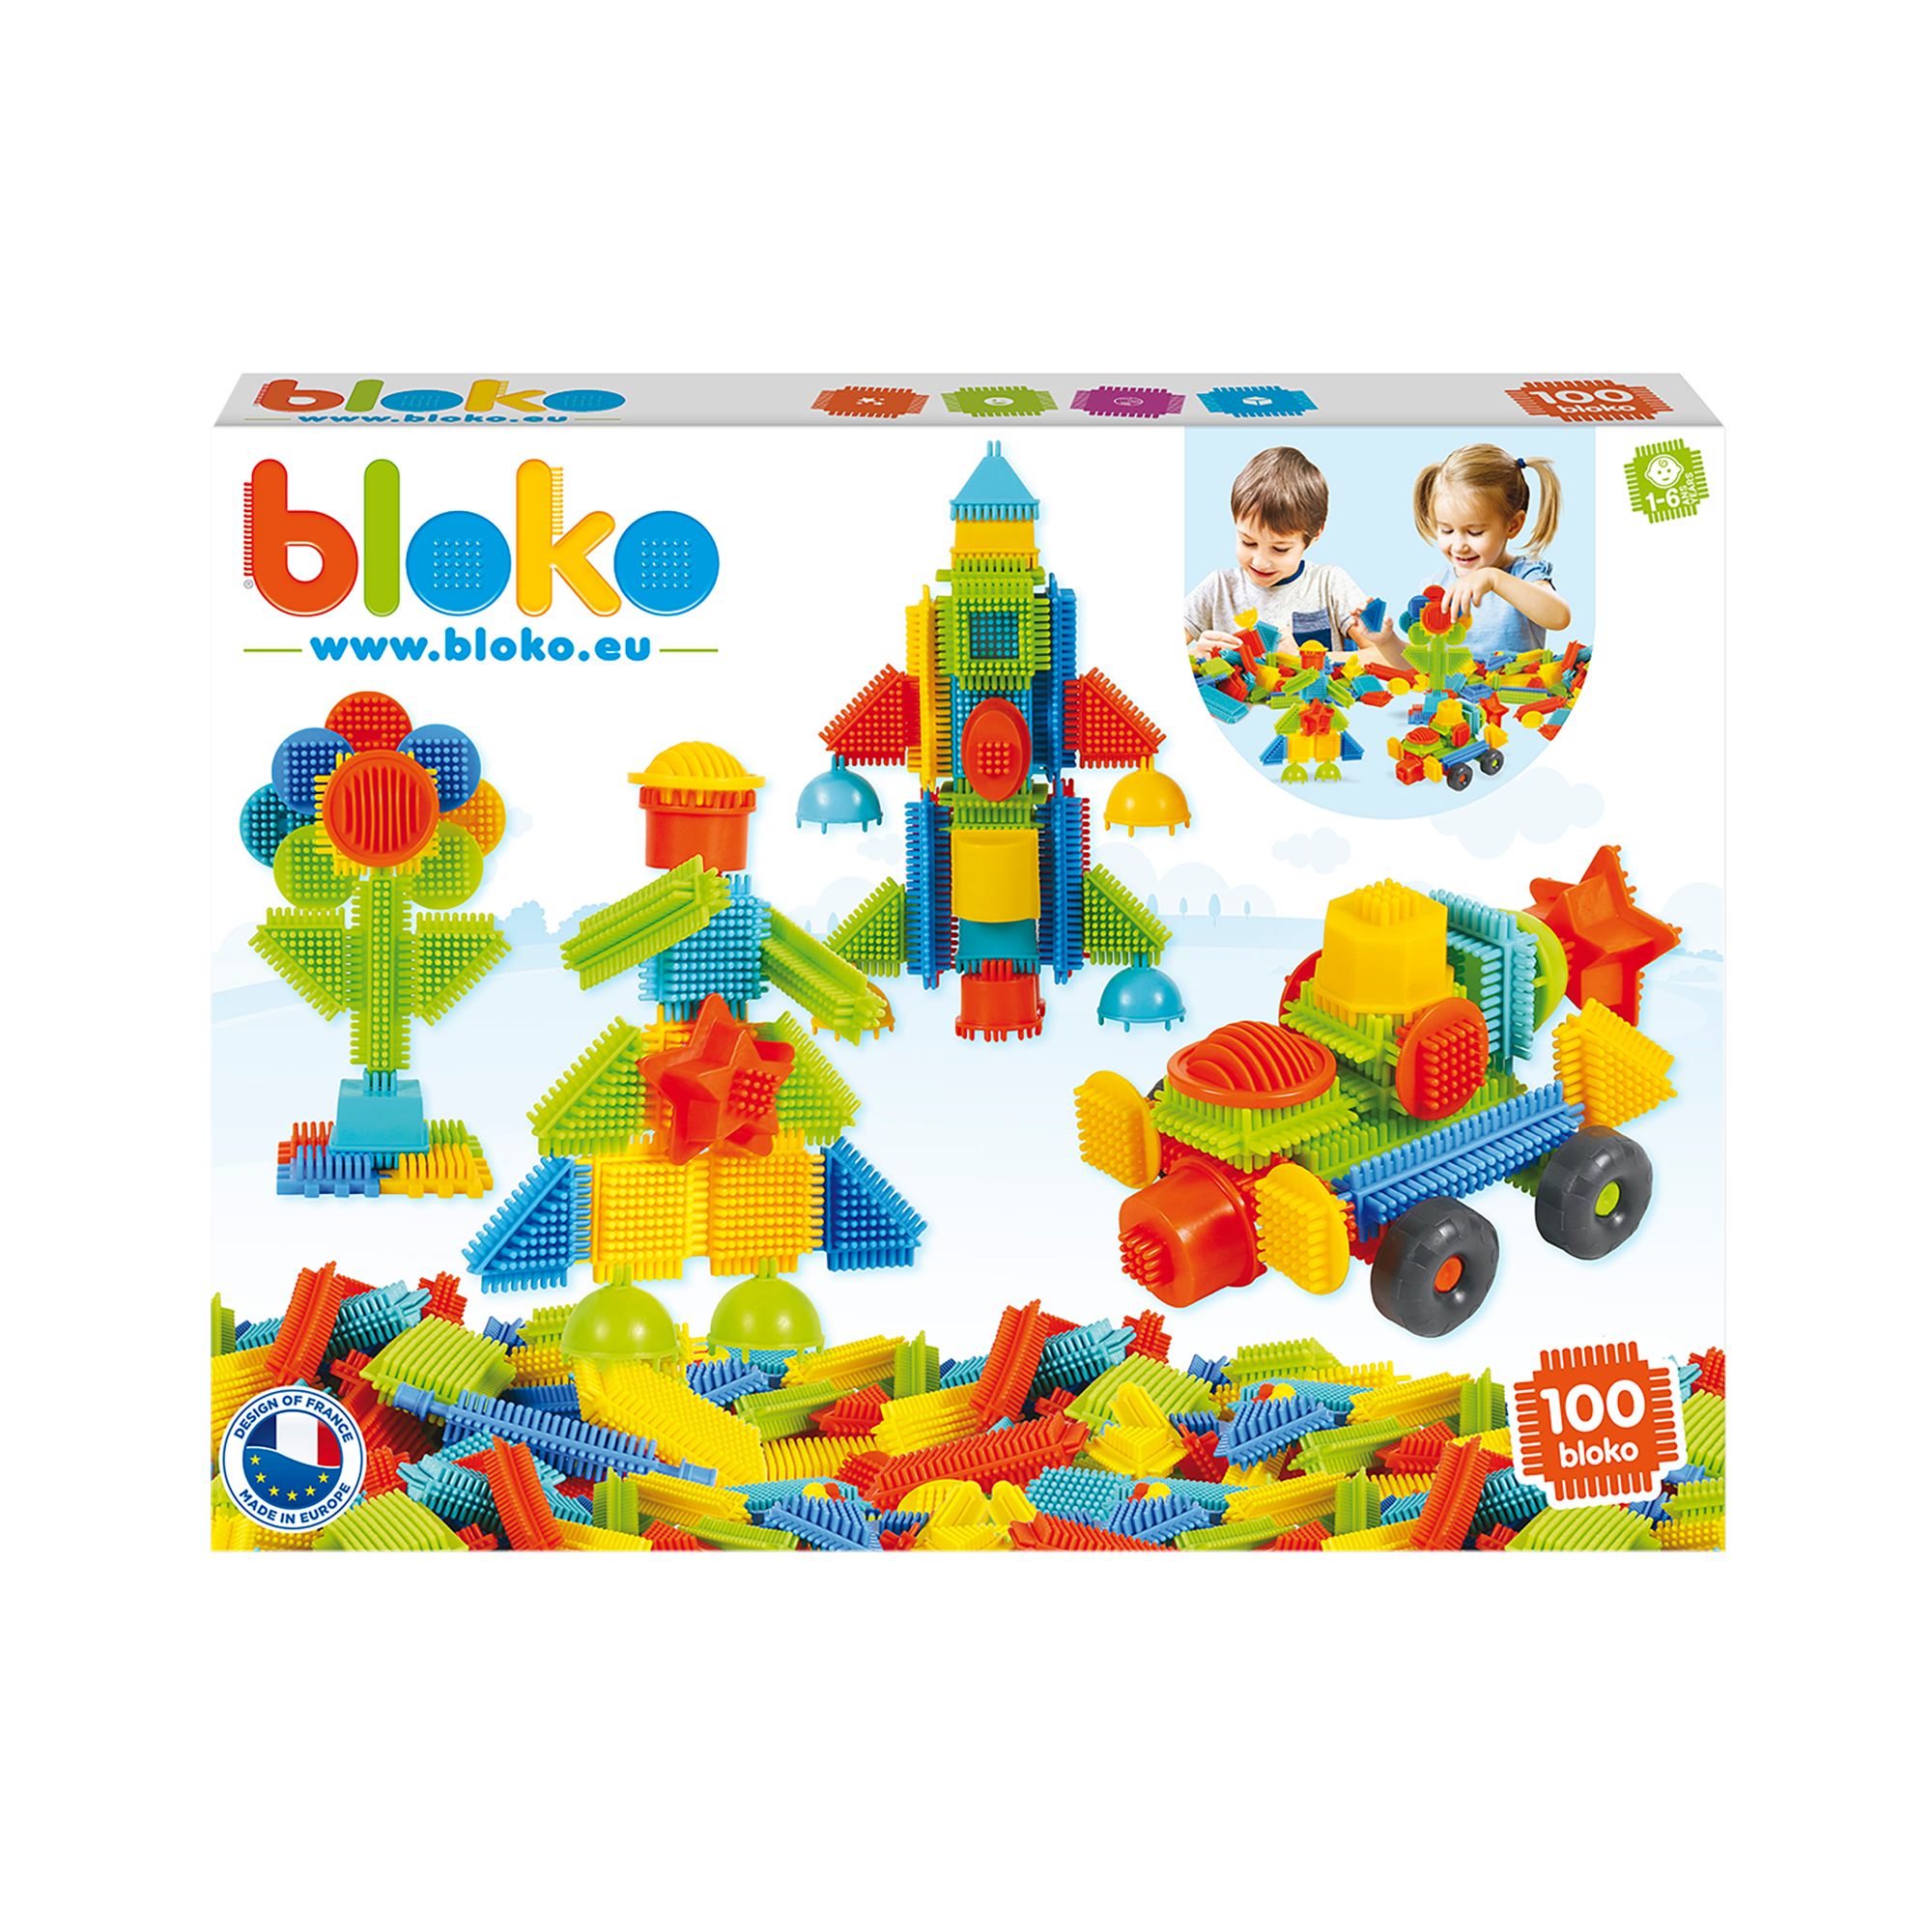 Box of 100 Bloko Pieces